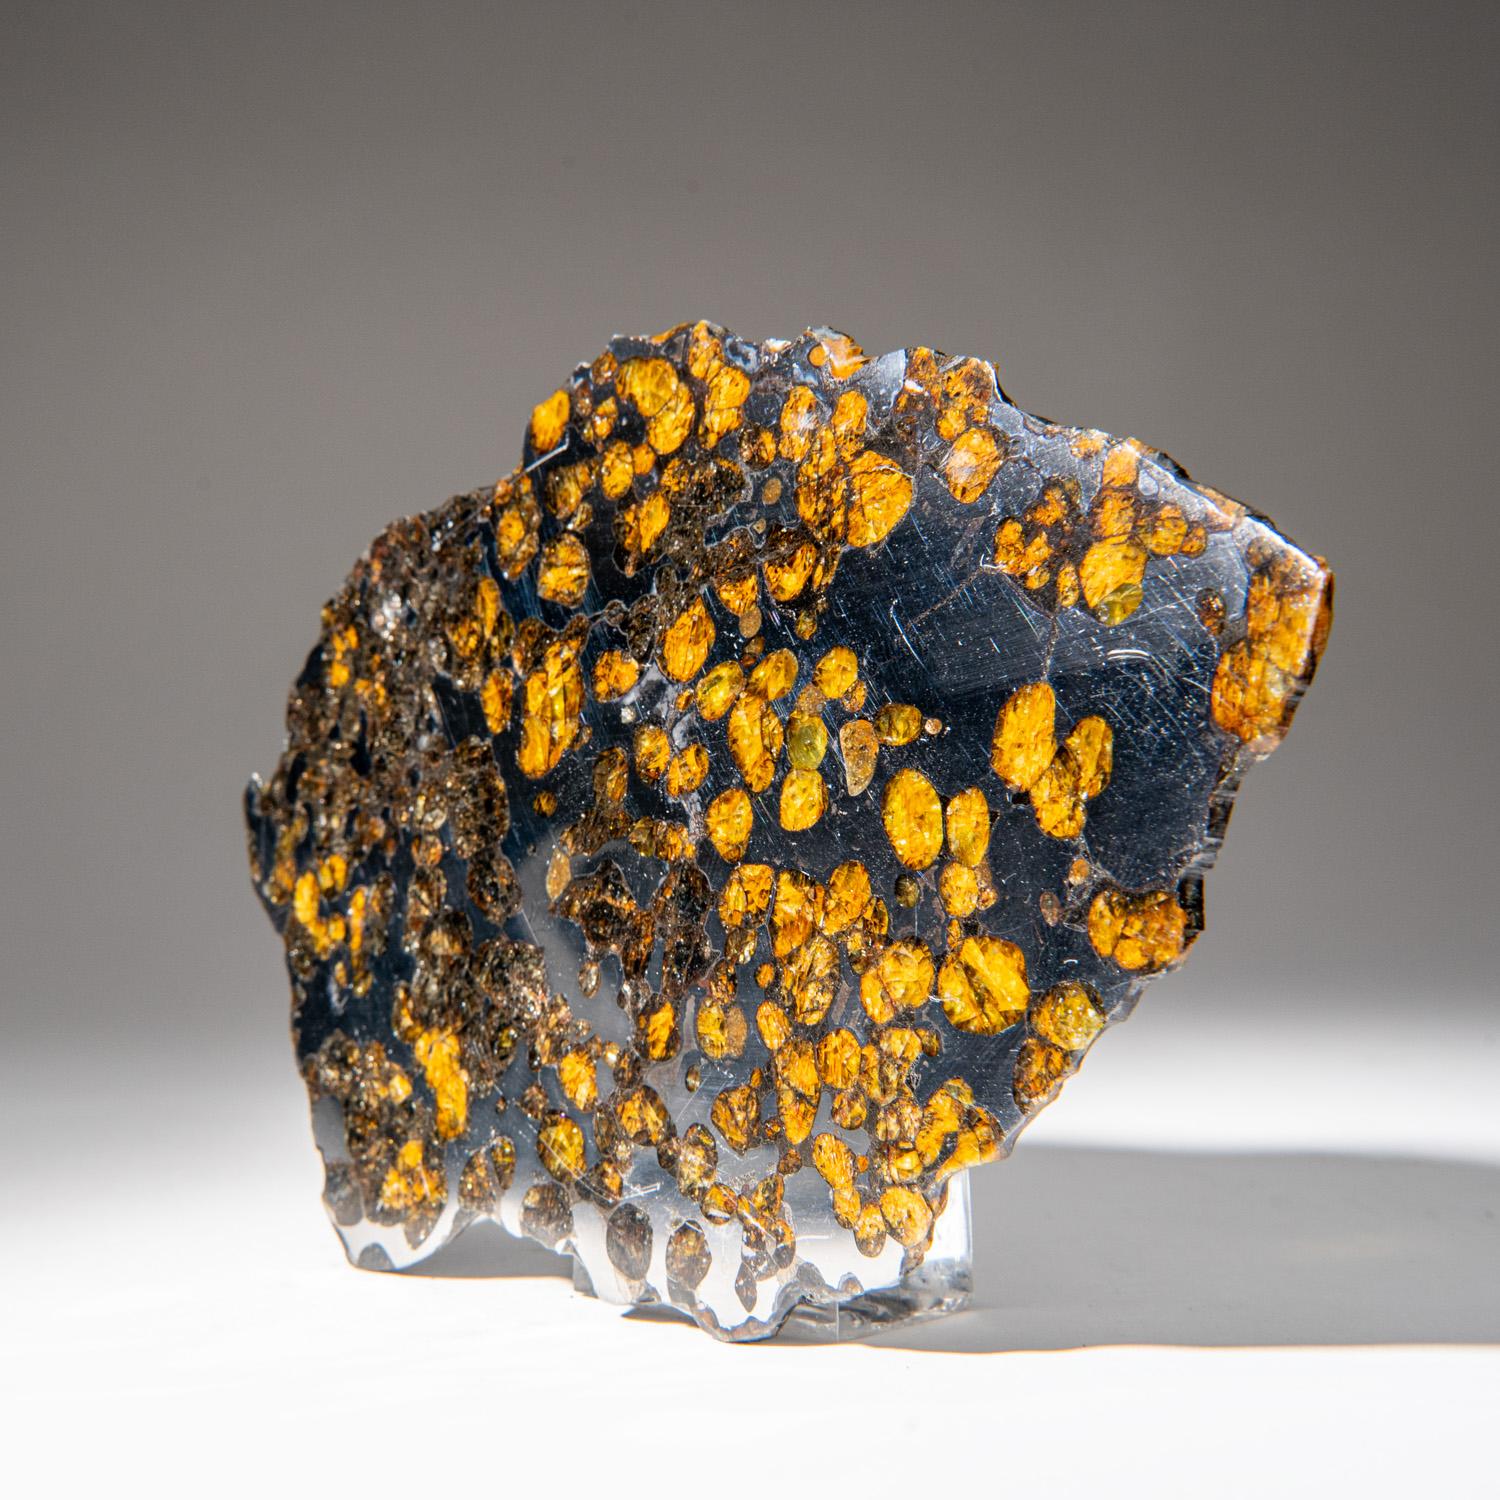 Brenham ist ein Pallasit-Meteorit, der in der Nähe von Haviland, einer Kleinstadt im Kiowa County, Kansas, Vereinigte Staaten, gefunden wurde. Pallasite sind eine Art von Stein-Eisen-Meteoriten, die beim Schneiden und Polieren gelbliche